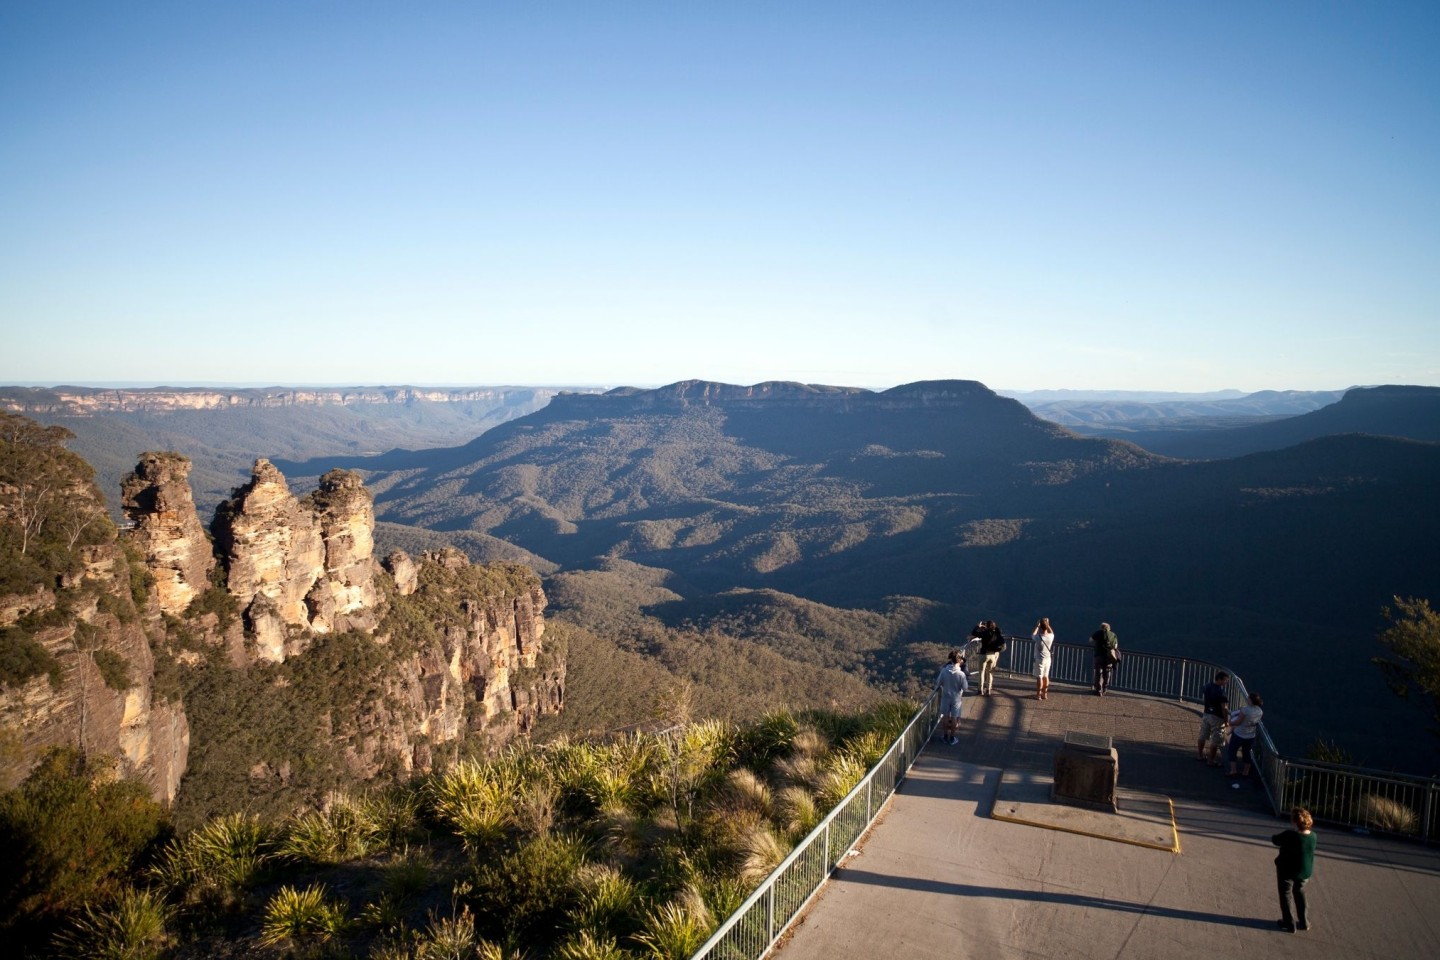 Aussichtspunkt in den Blue Mountains in Australien. Dort sind fünf Wanderer von einem Erdrutsch getroffen worden.